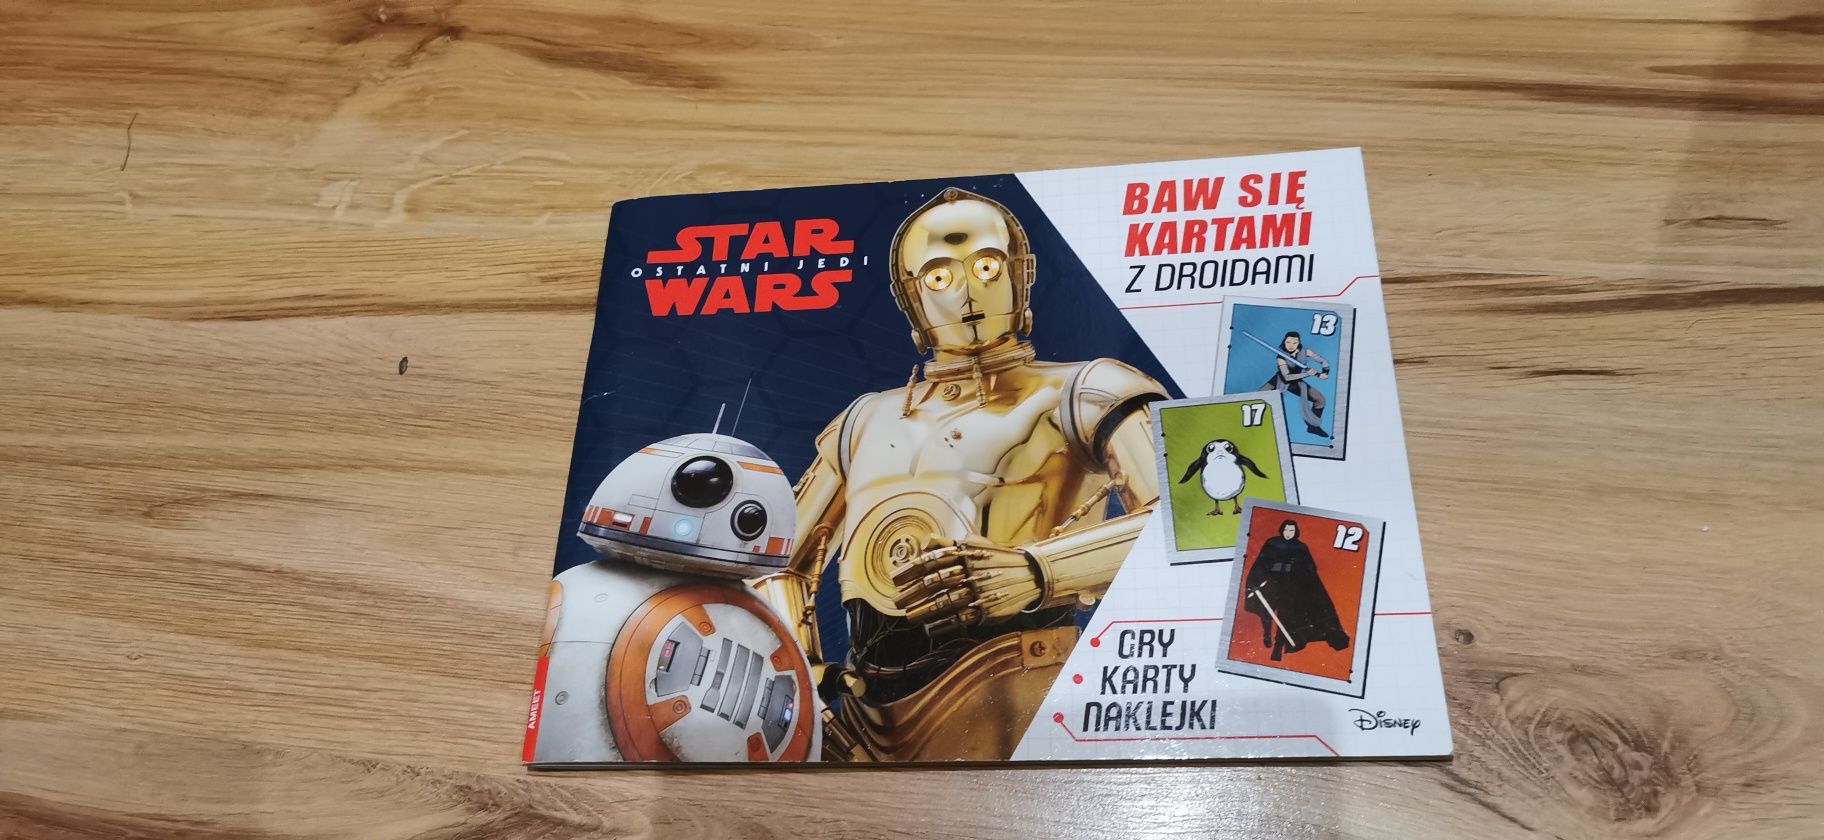 Nowa Star Wars książka z kartami, grami, wyklejankami